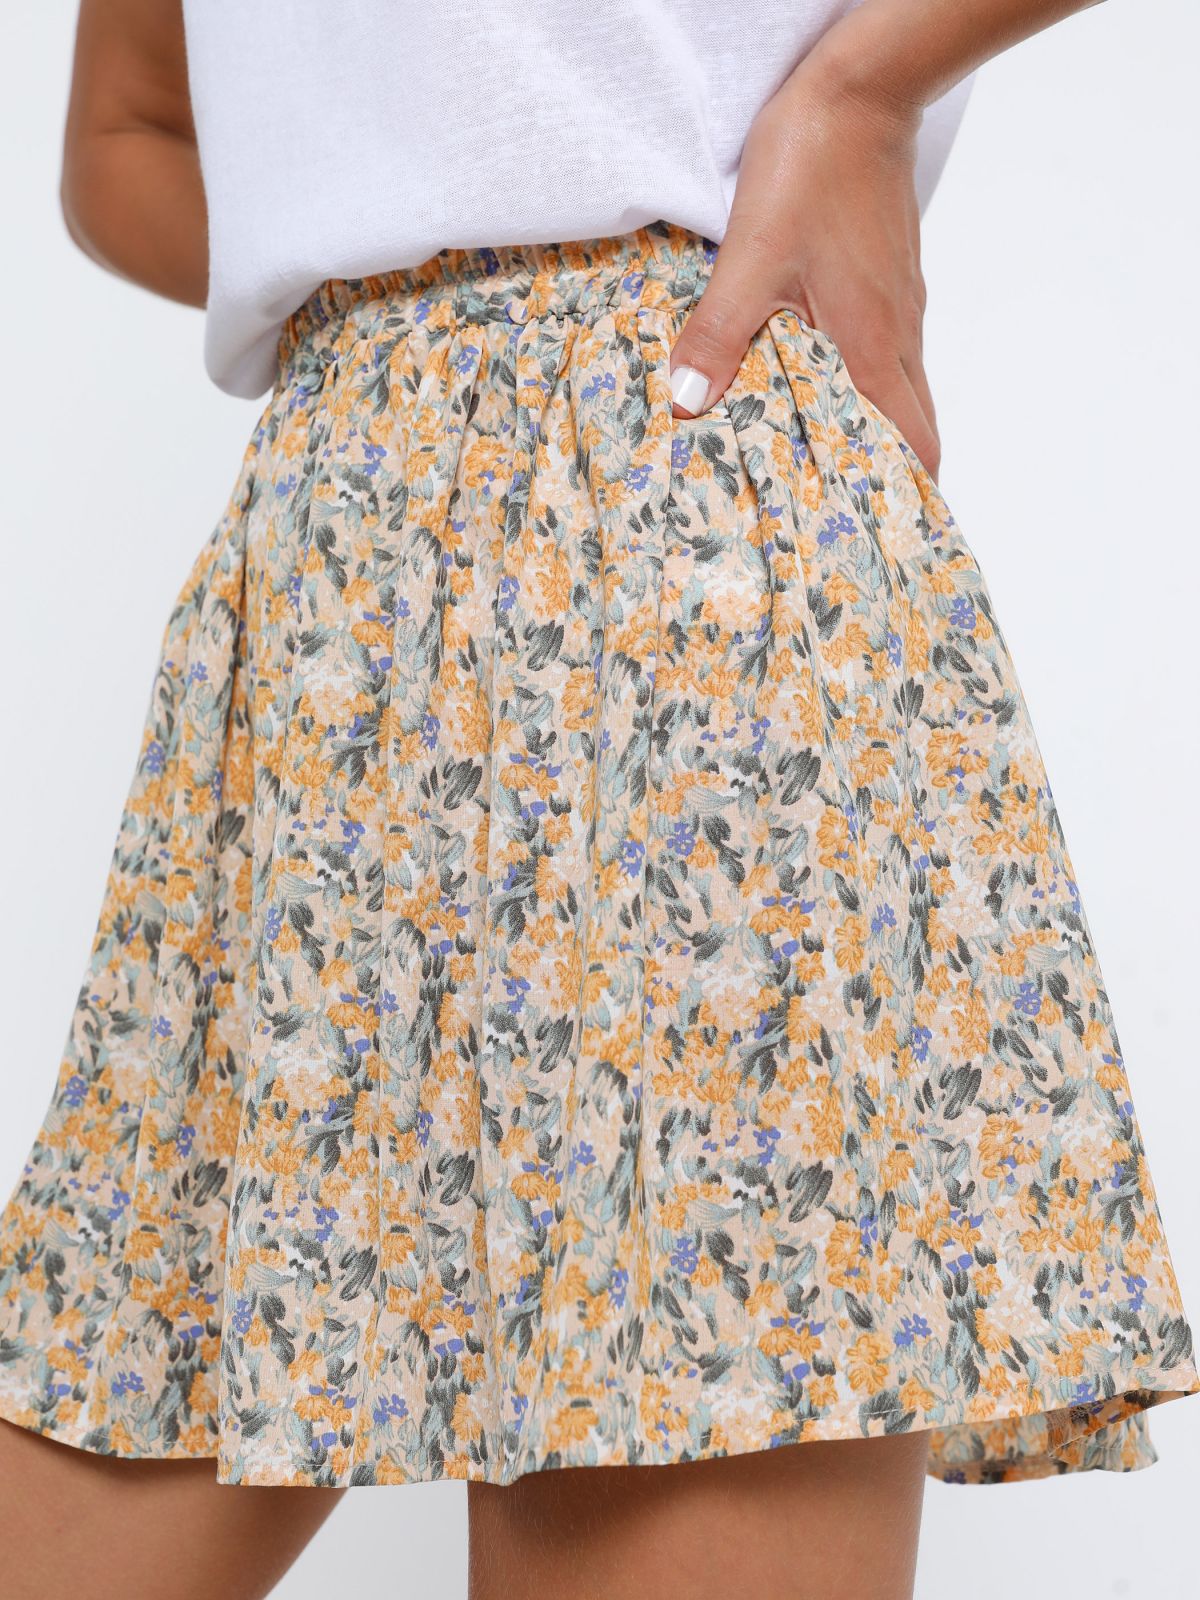  חצאית מיני בהדפס פרחים של YANGA